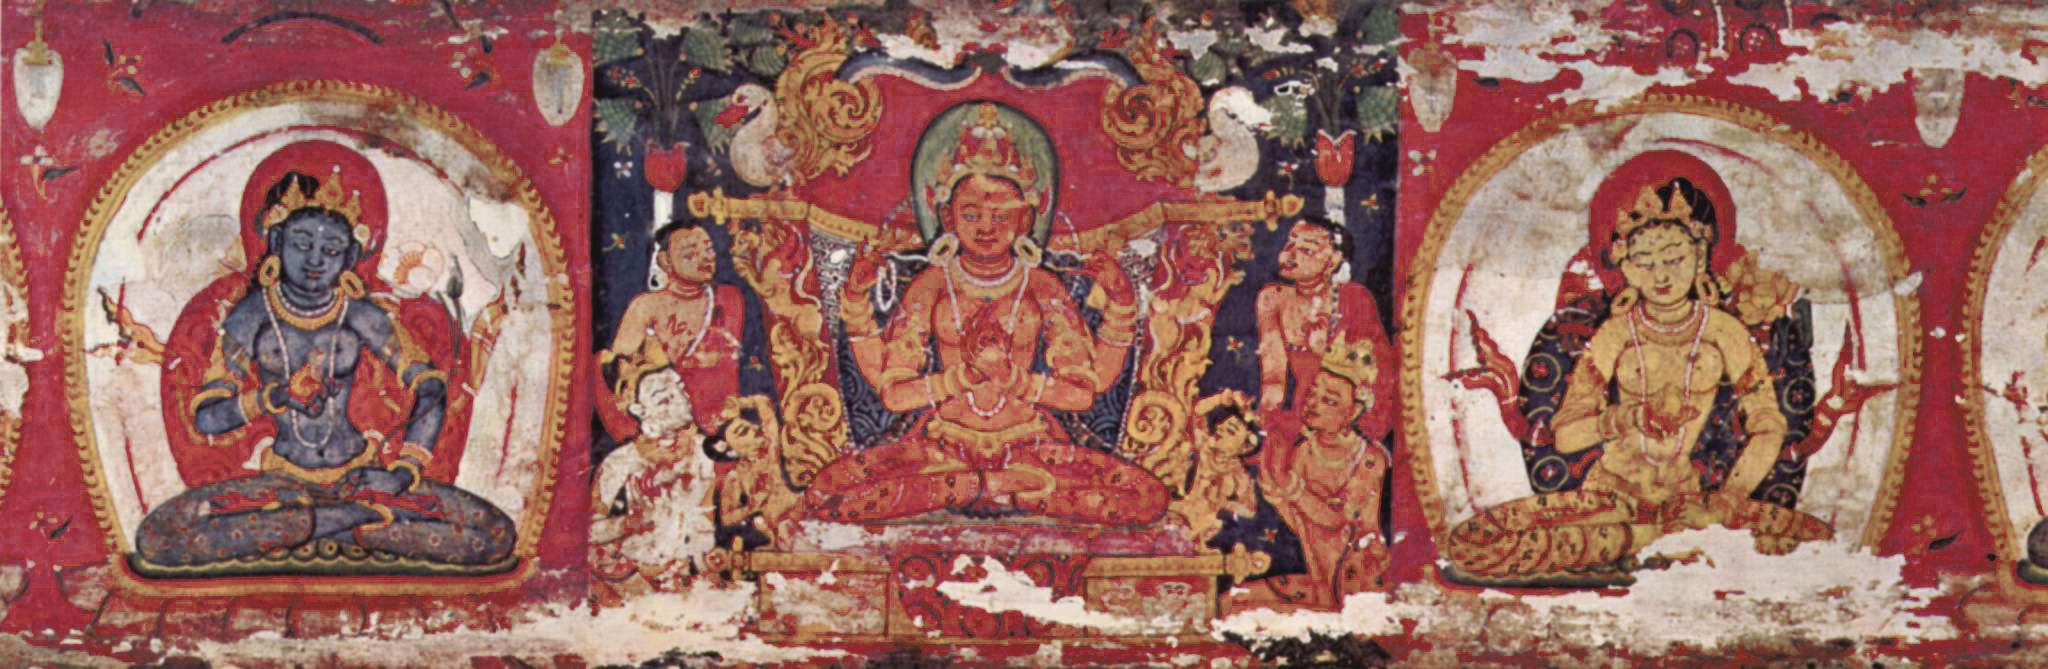 Lama Surya Das - Ep. 67 - The Heart Sutra